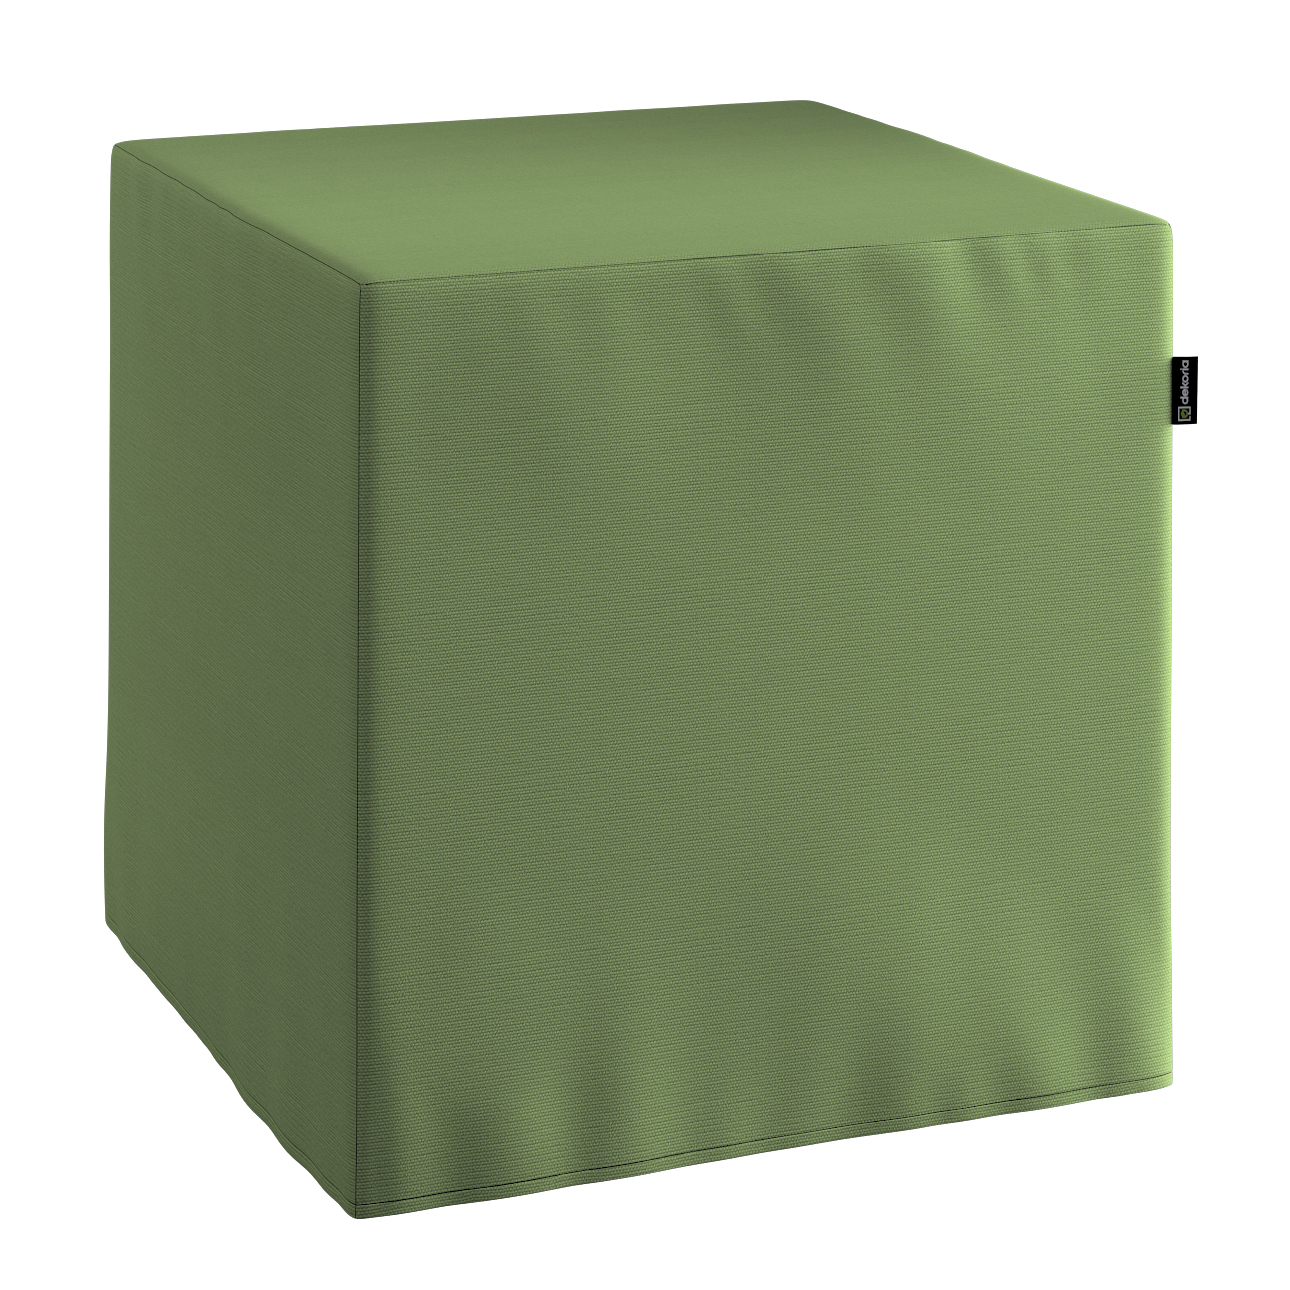 Bezug für Sitzwürfel, waldgrün, Bezug für Sitzwürfel 40 x 40 x 40 cm, Cotto günstig online kaufen